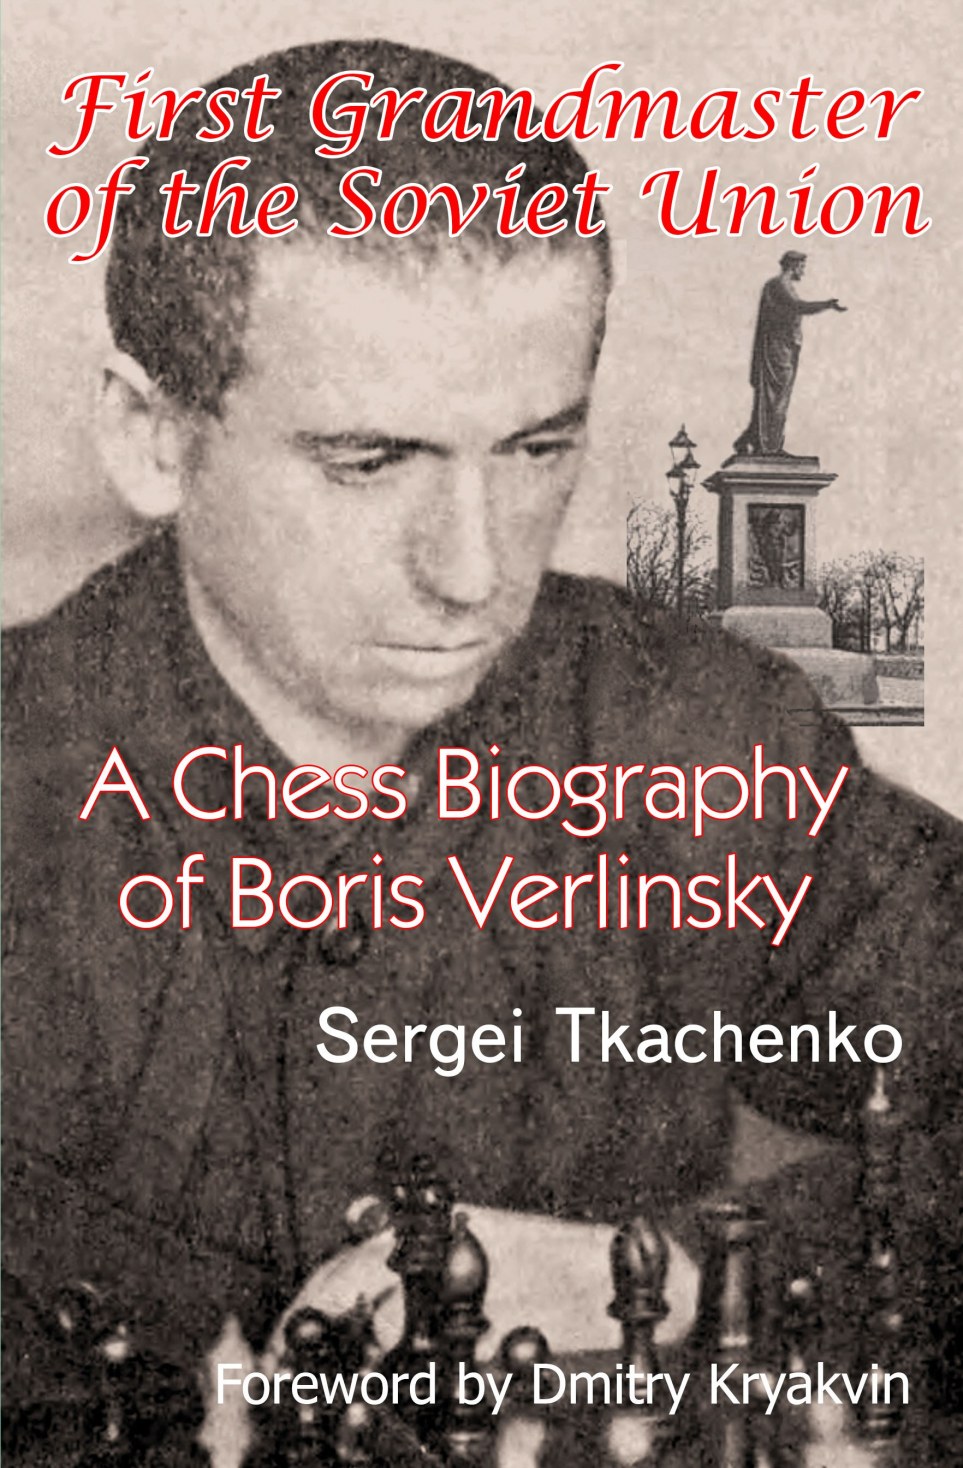 Alexander Alekhine. Games 1935 - 1946 - Schachversand Niggemann